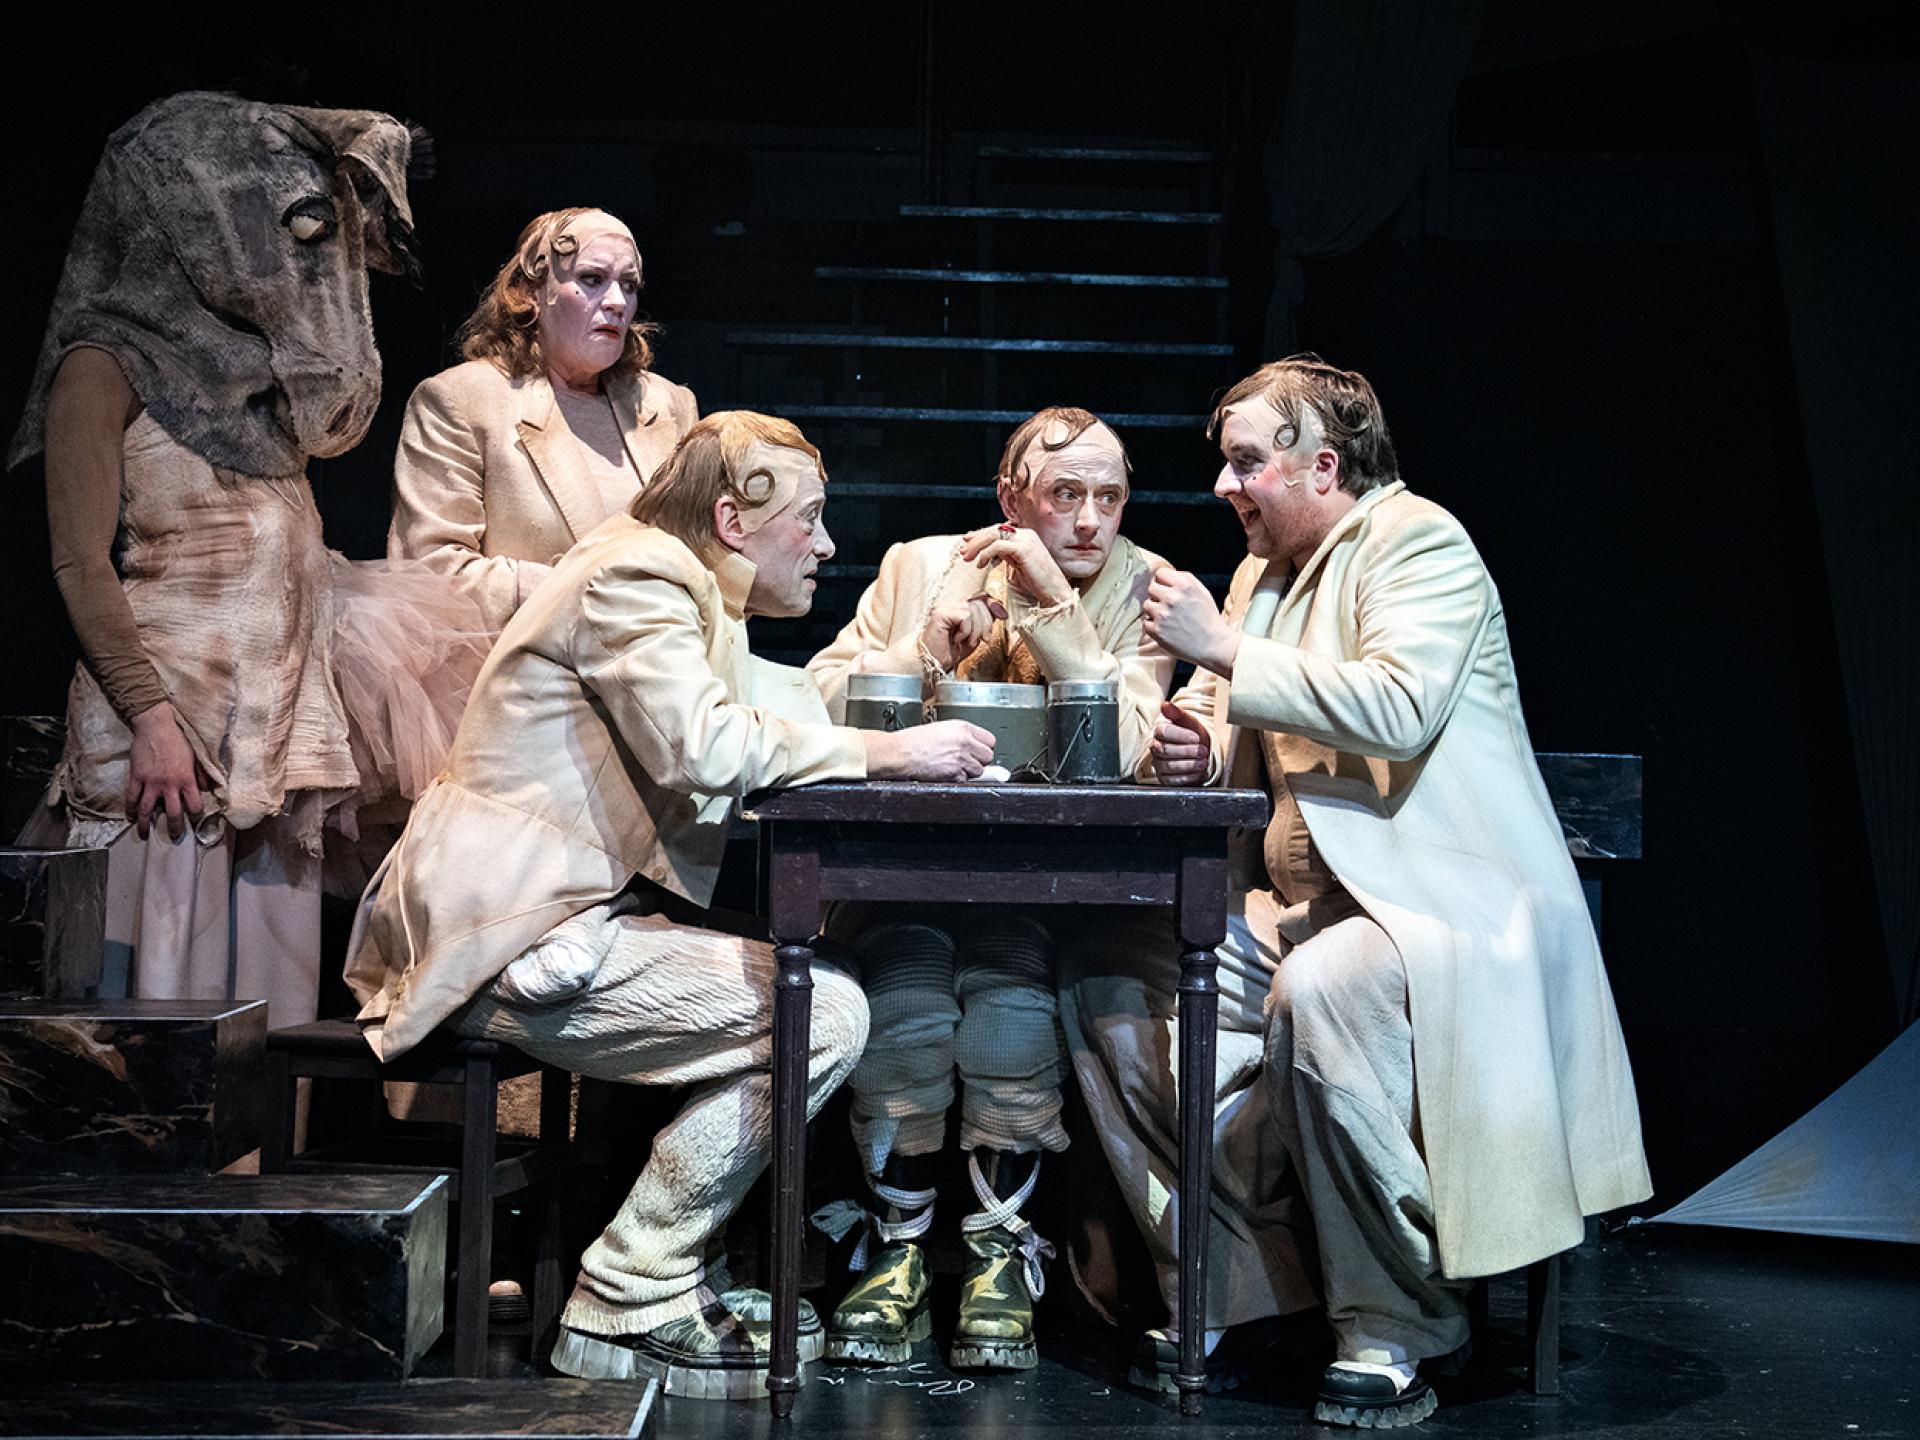 Um einen Tisch herum sitzen bzw. stehen Figuren des Stückes: Tyll (gespielt von Esra Schreier), Agneta, Claus, Kircher und Tesimond in der Inszenierung von "Tyll" am Theater Heidelberg im Dezember 2021.